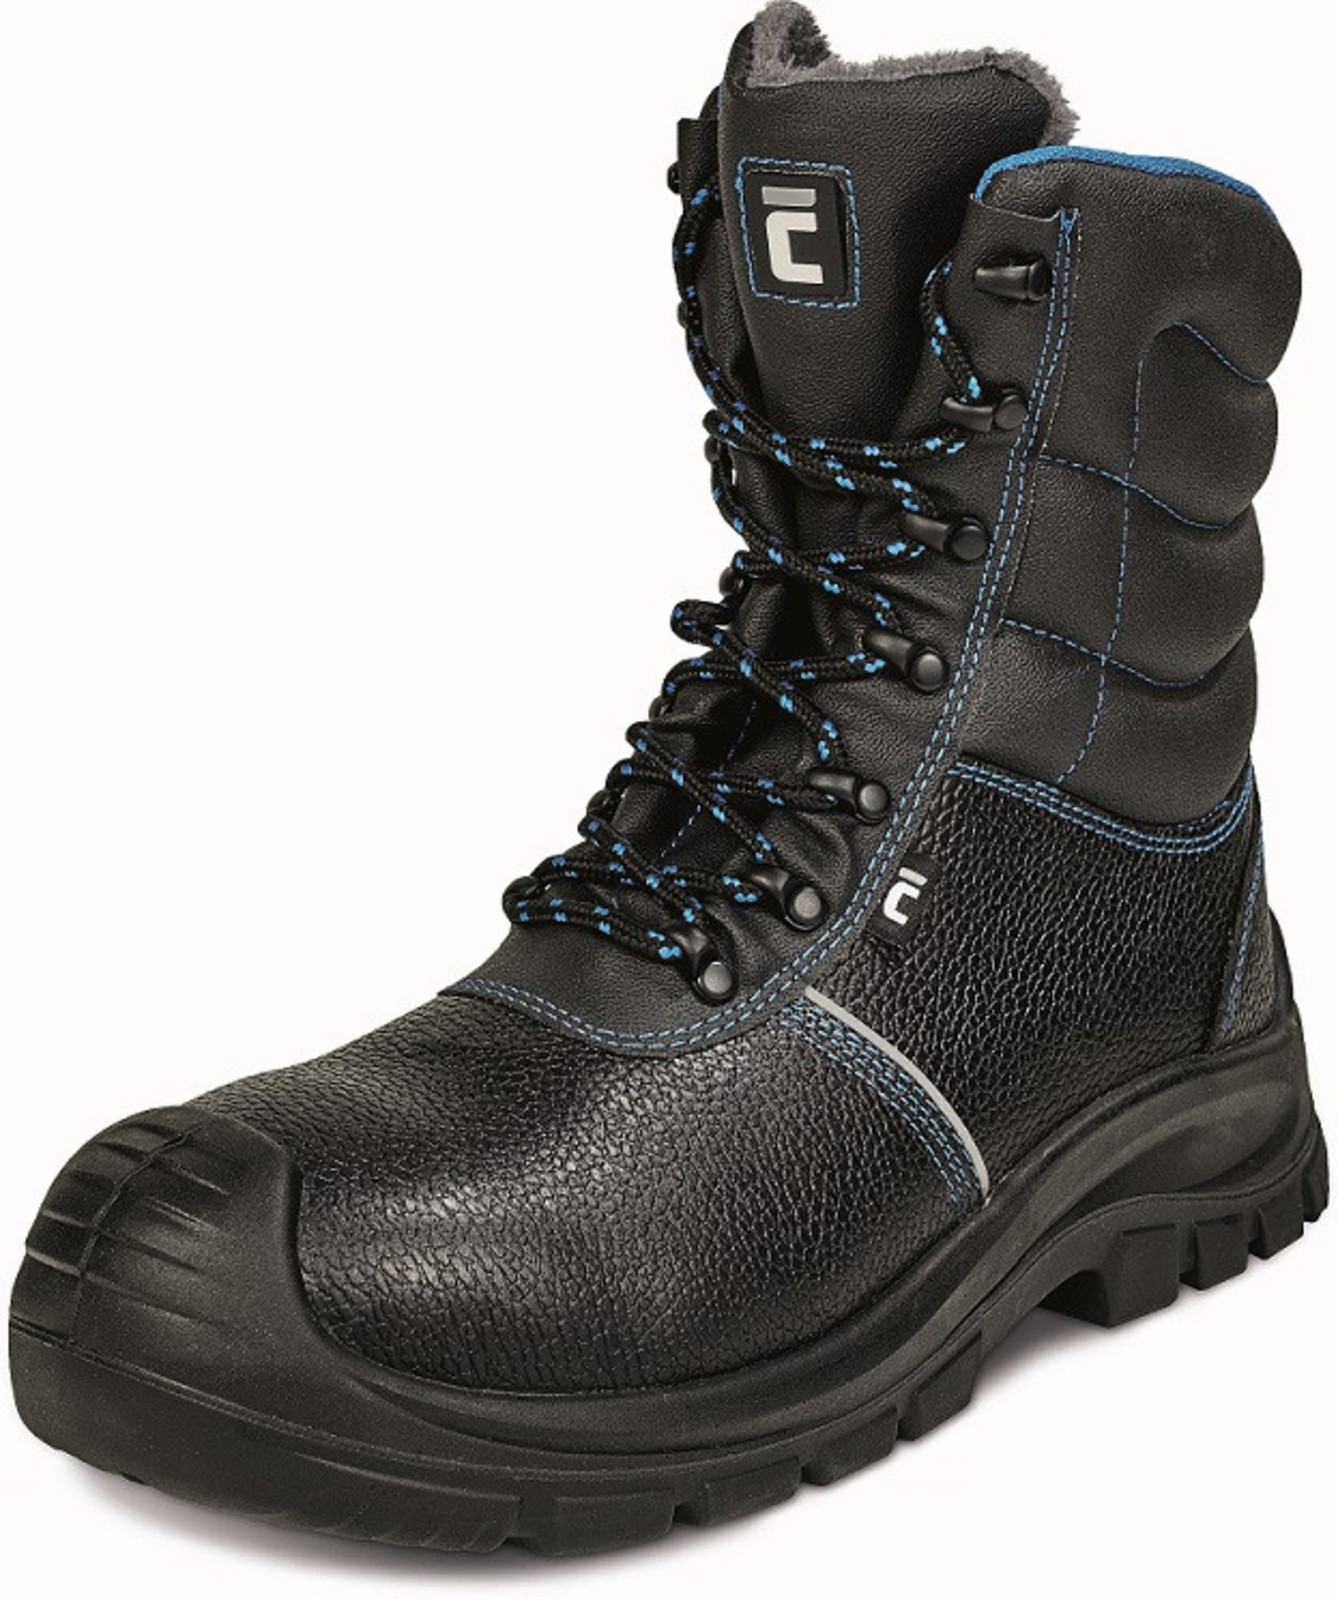 Zimná vysoká bezpečnostná obuv Raven XT S3 - veľkosť: 41, farba: čierna